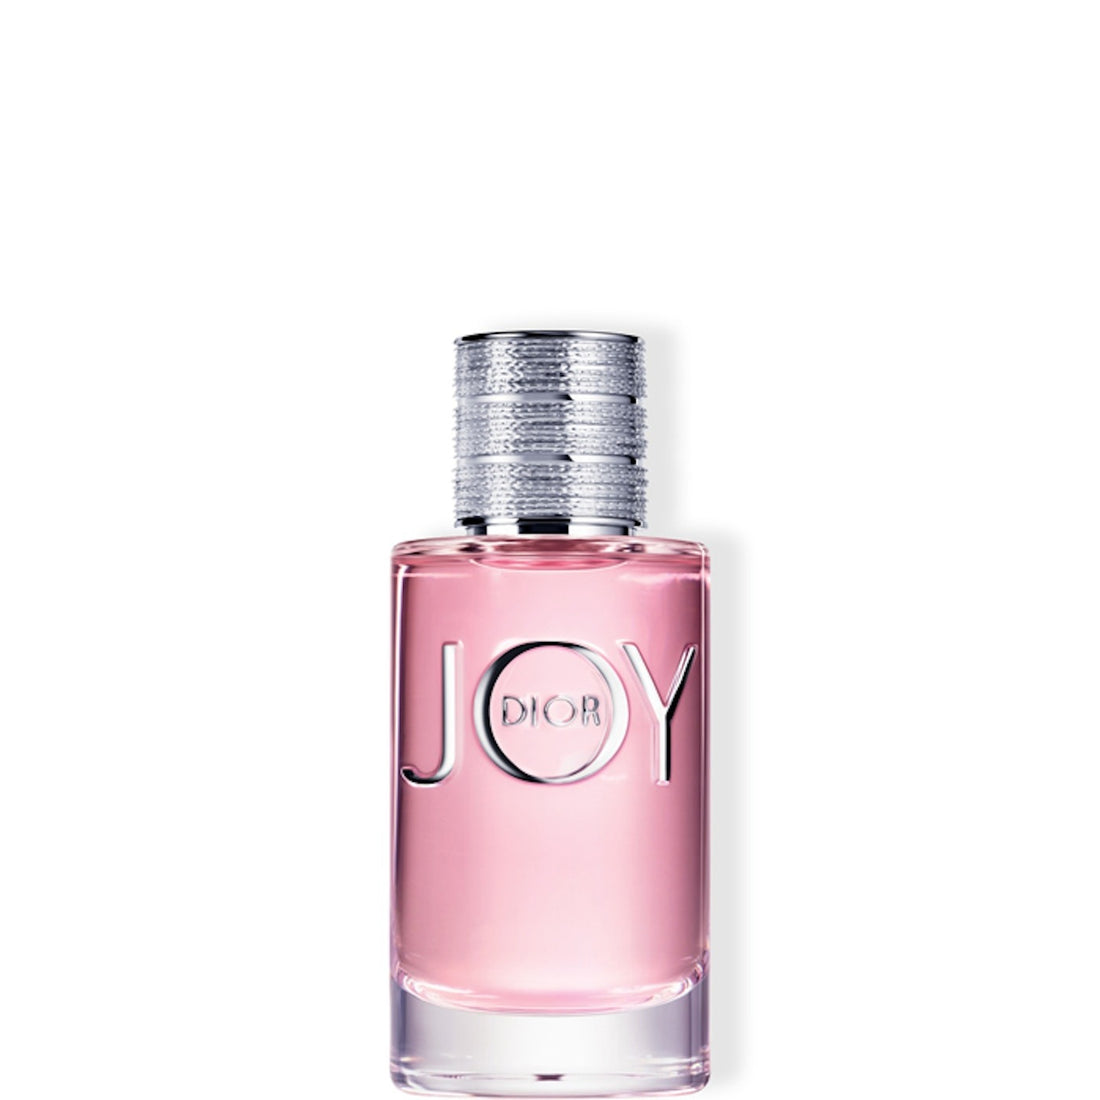 JOY by Dior Eau De Parfum 50ml Spray 